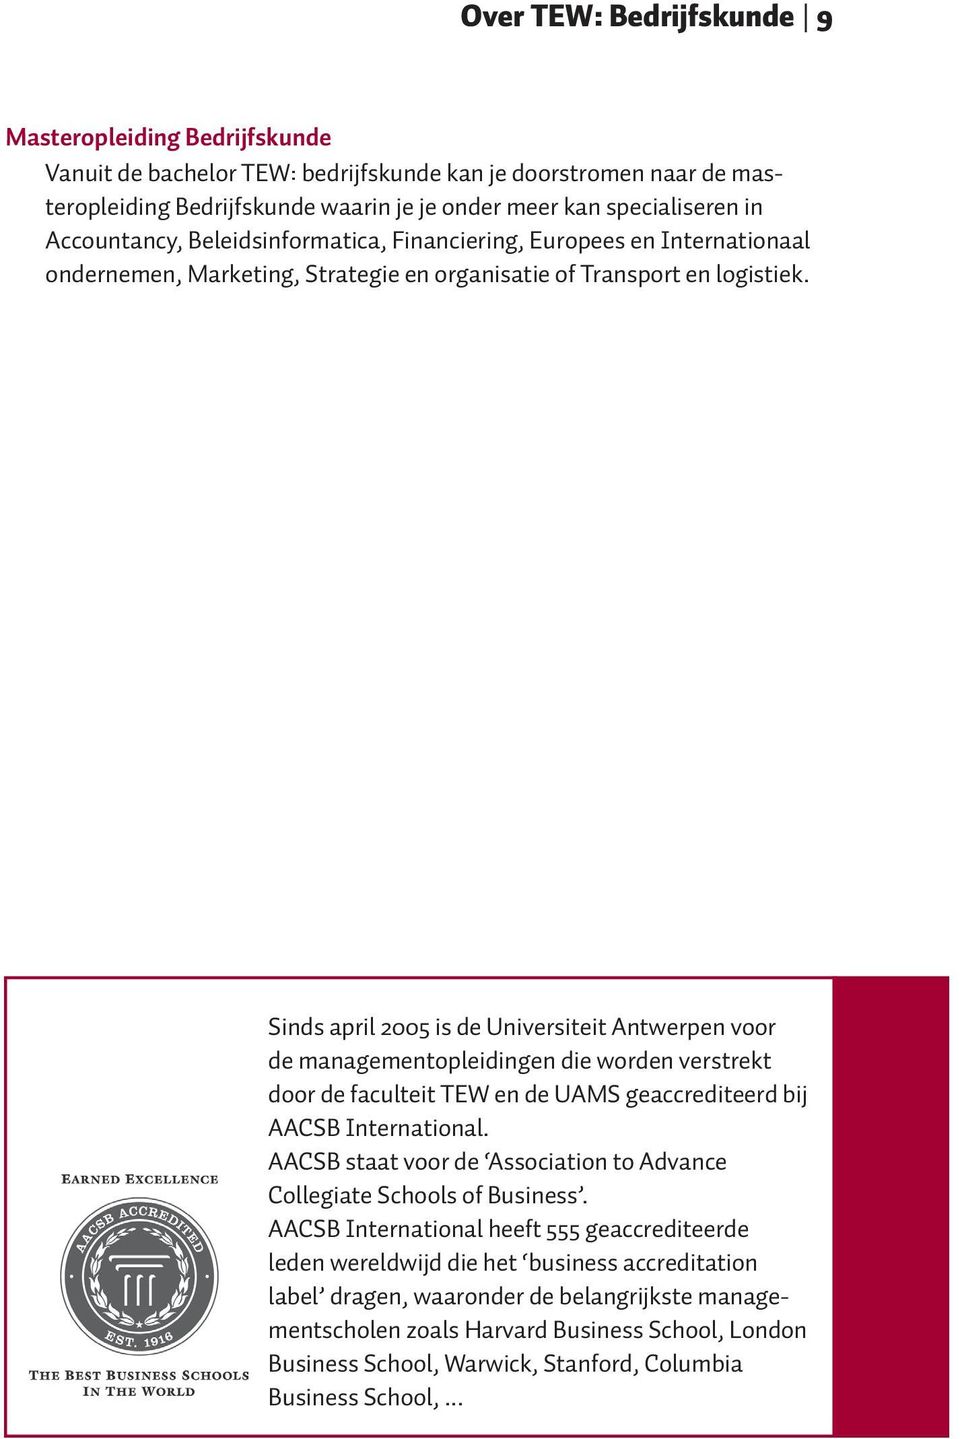 Sinds april 2005 is de Universiteit Antwerpen voor de managementopleidingen die worden verstrekt door de faculteit TEW en de UAMS geaccrediteerd bij AACSB International.